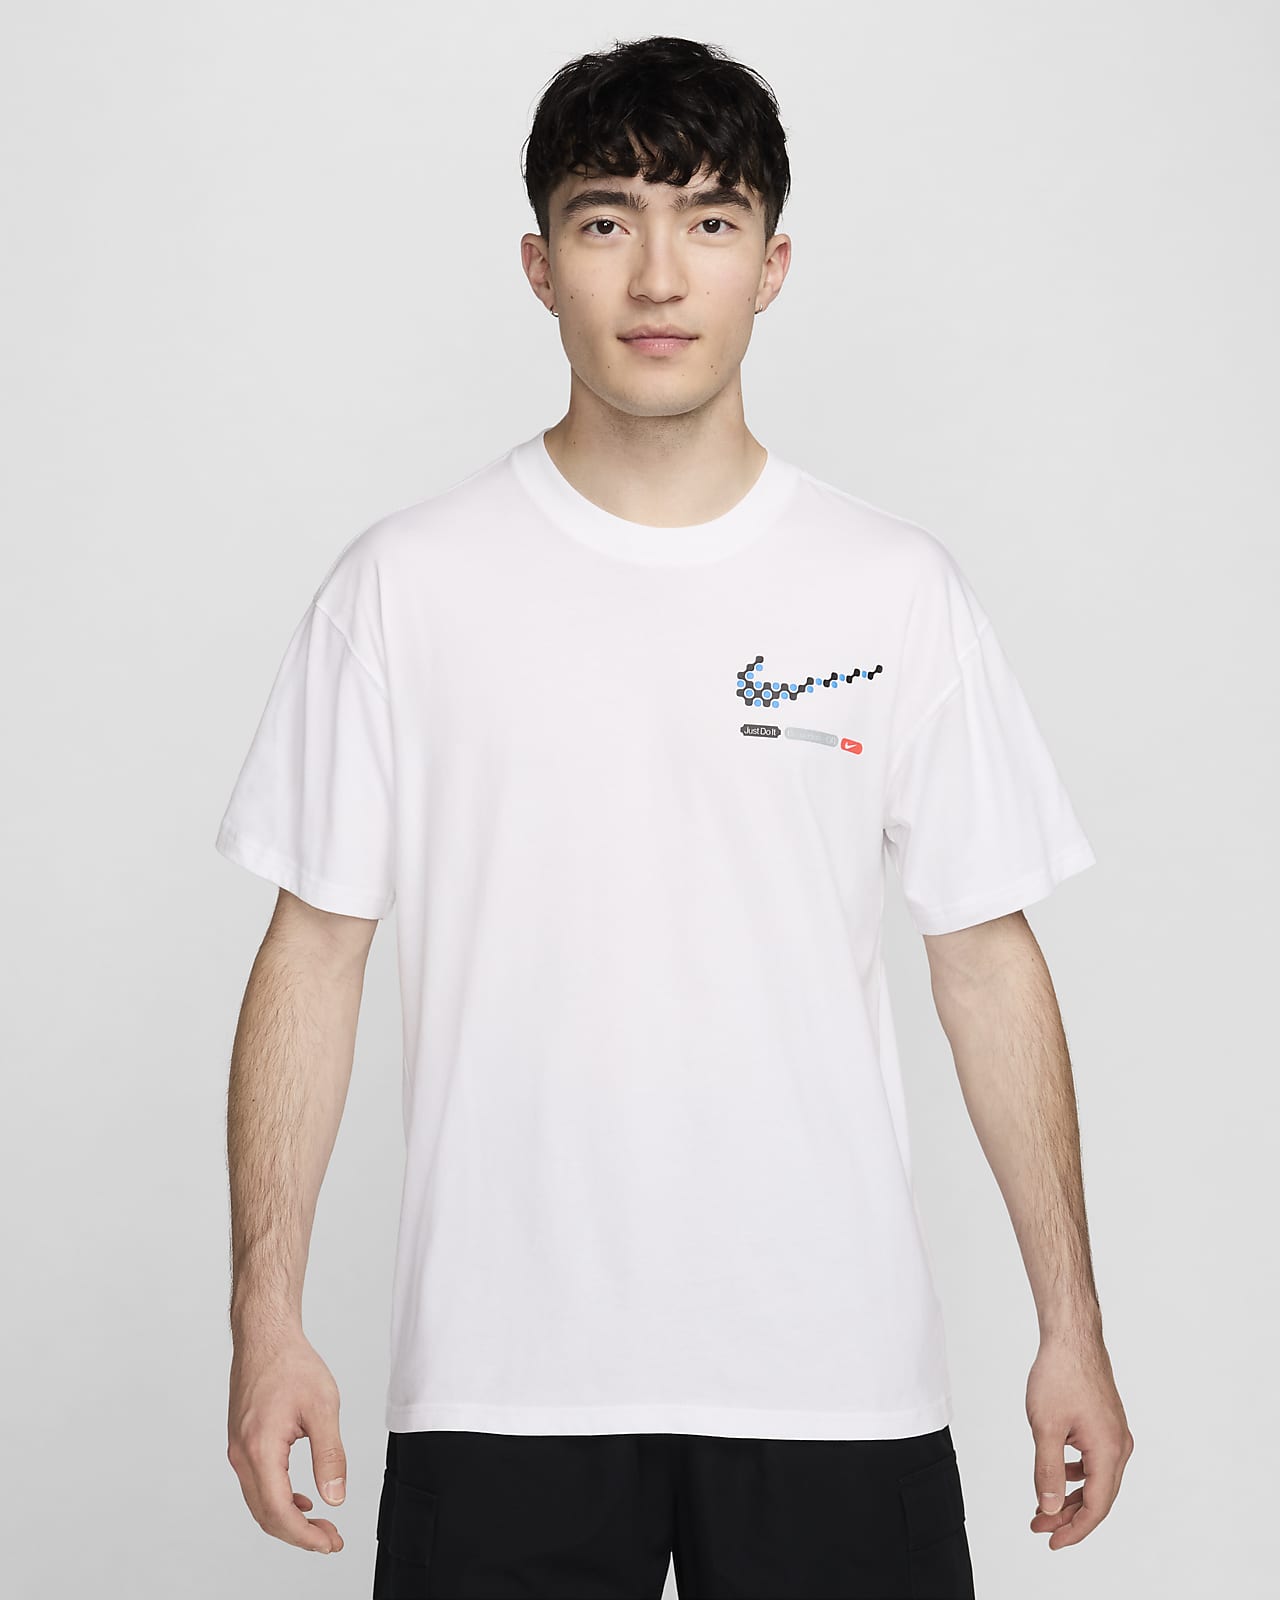 ナイキ スポーツウェア メンズ マックス90 Tシャツ